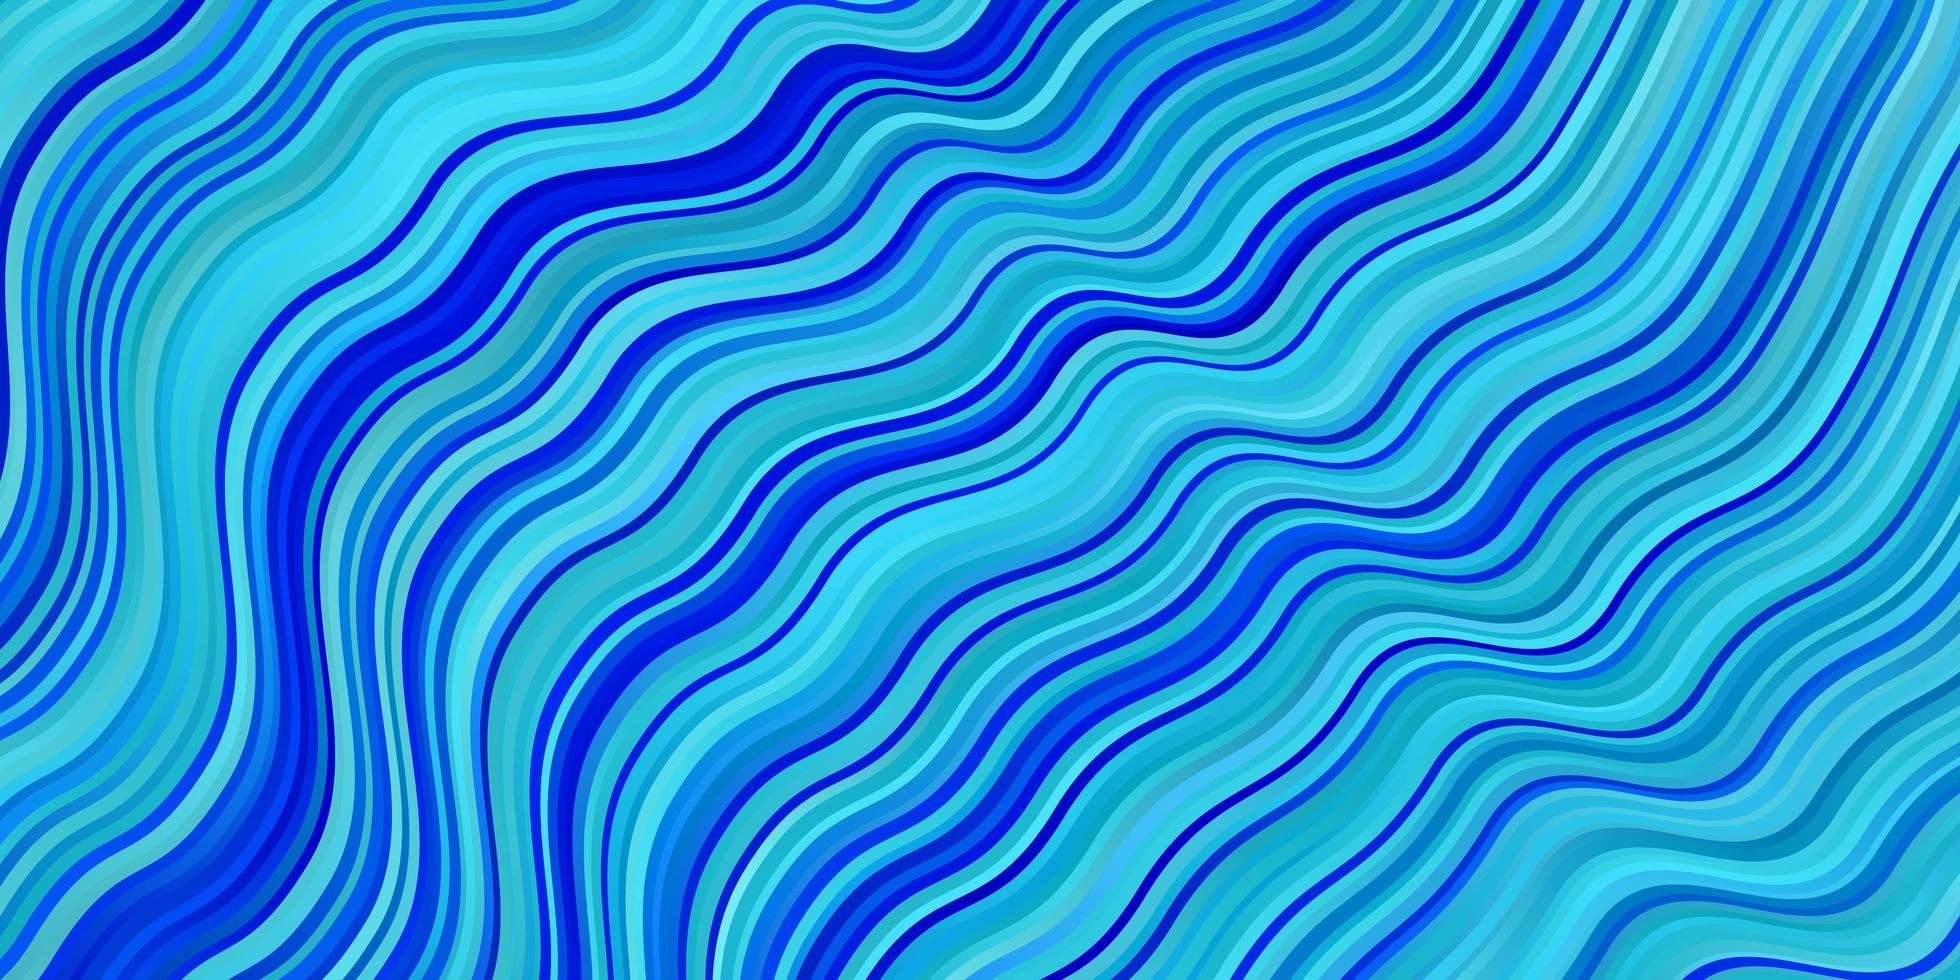 textura de vector azul claro con ilustración de líneas torcidas en estilo de semitono con curvas de degradado mejor diseño para sus carteles, pancartas